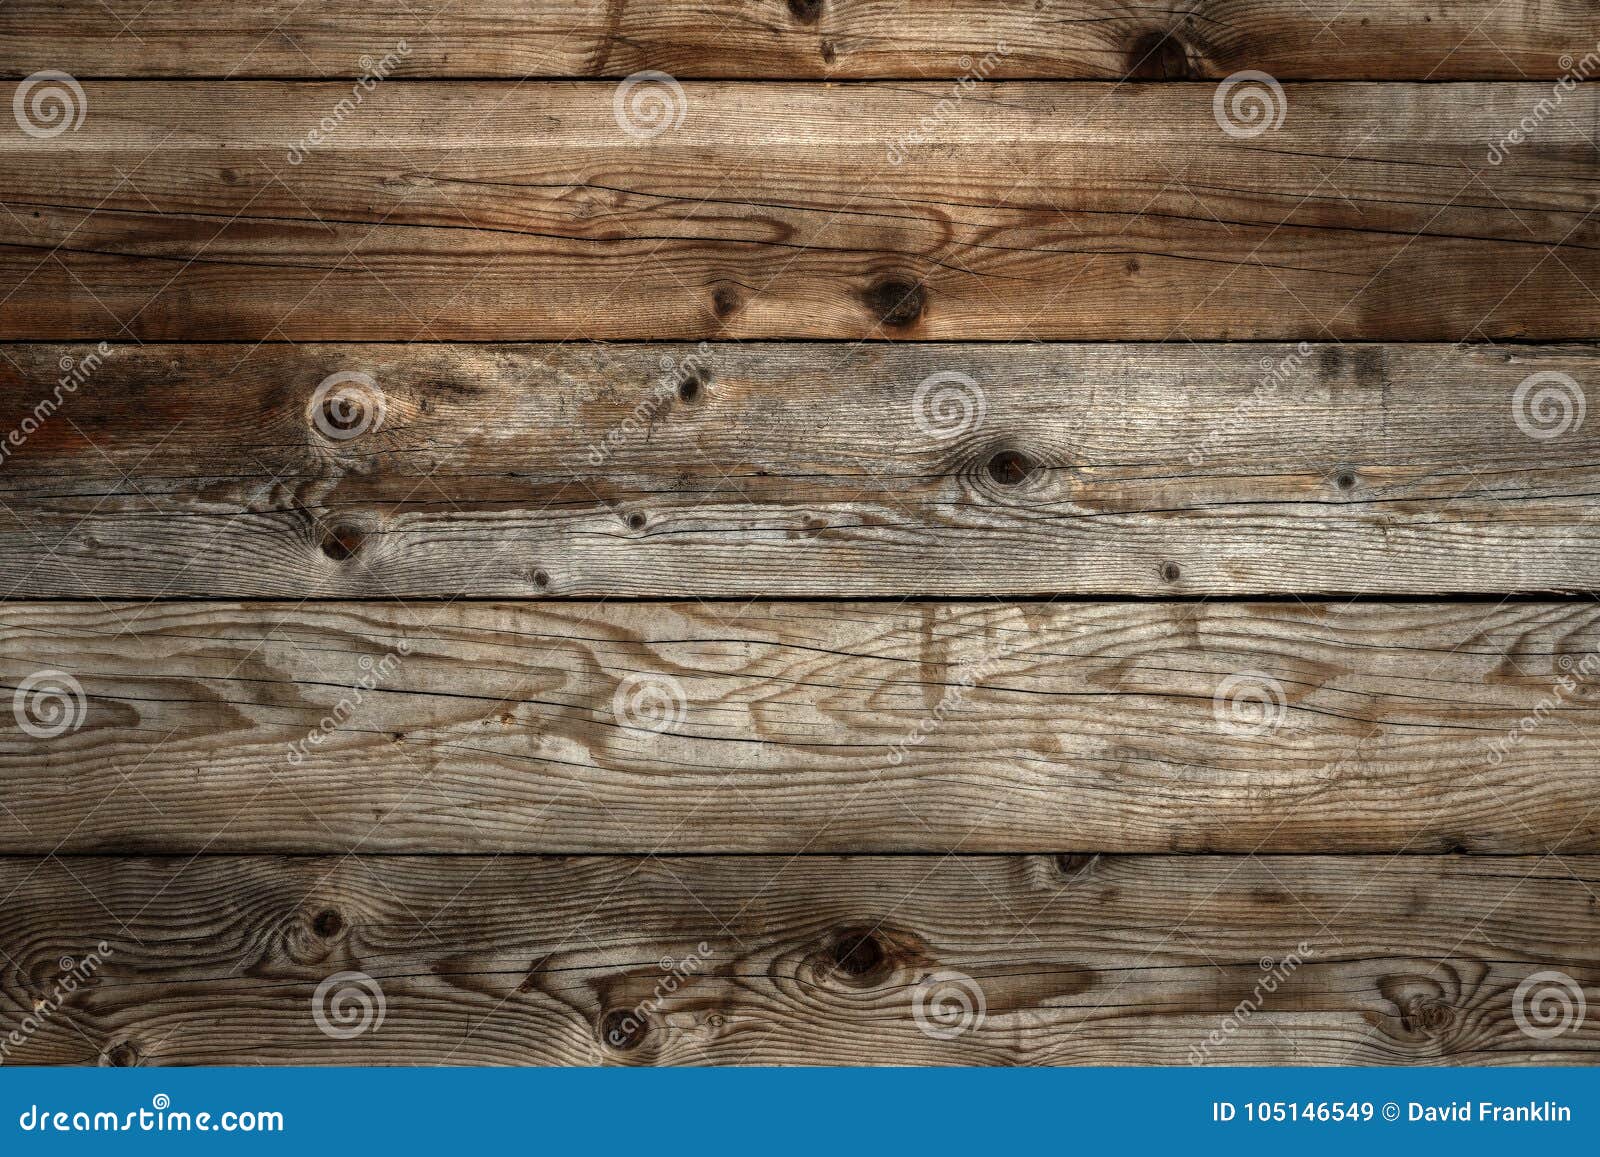 Thưởng thức vẻ đẹp lịch lãm và tinh tế của gỗ sồi nâu đậm với hình ảnh liên quan. Hình nền uyển chuyển sẽ giúp bạn dễ dàng hình dung được sự sang trọng của các sản phẩm đồ nội thất sử dụng loại gỗ này.